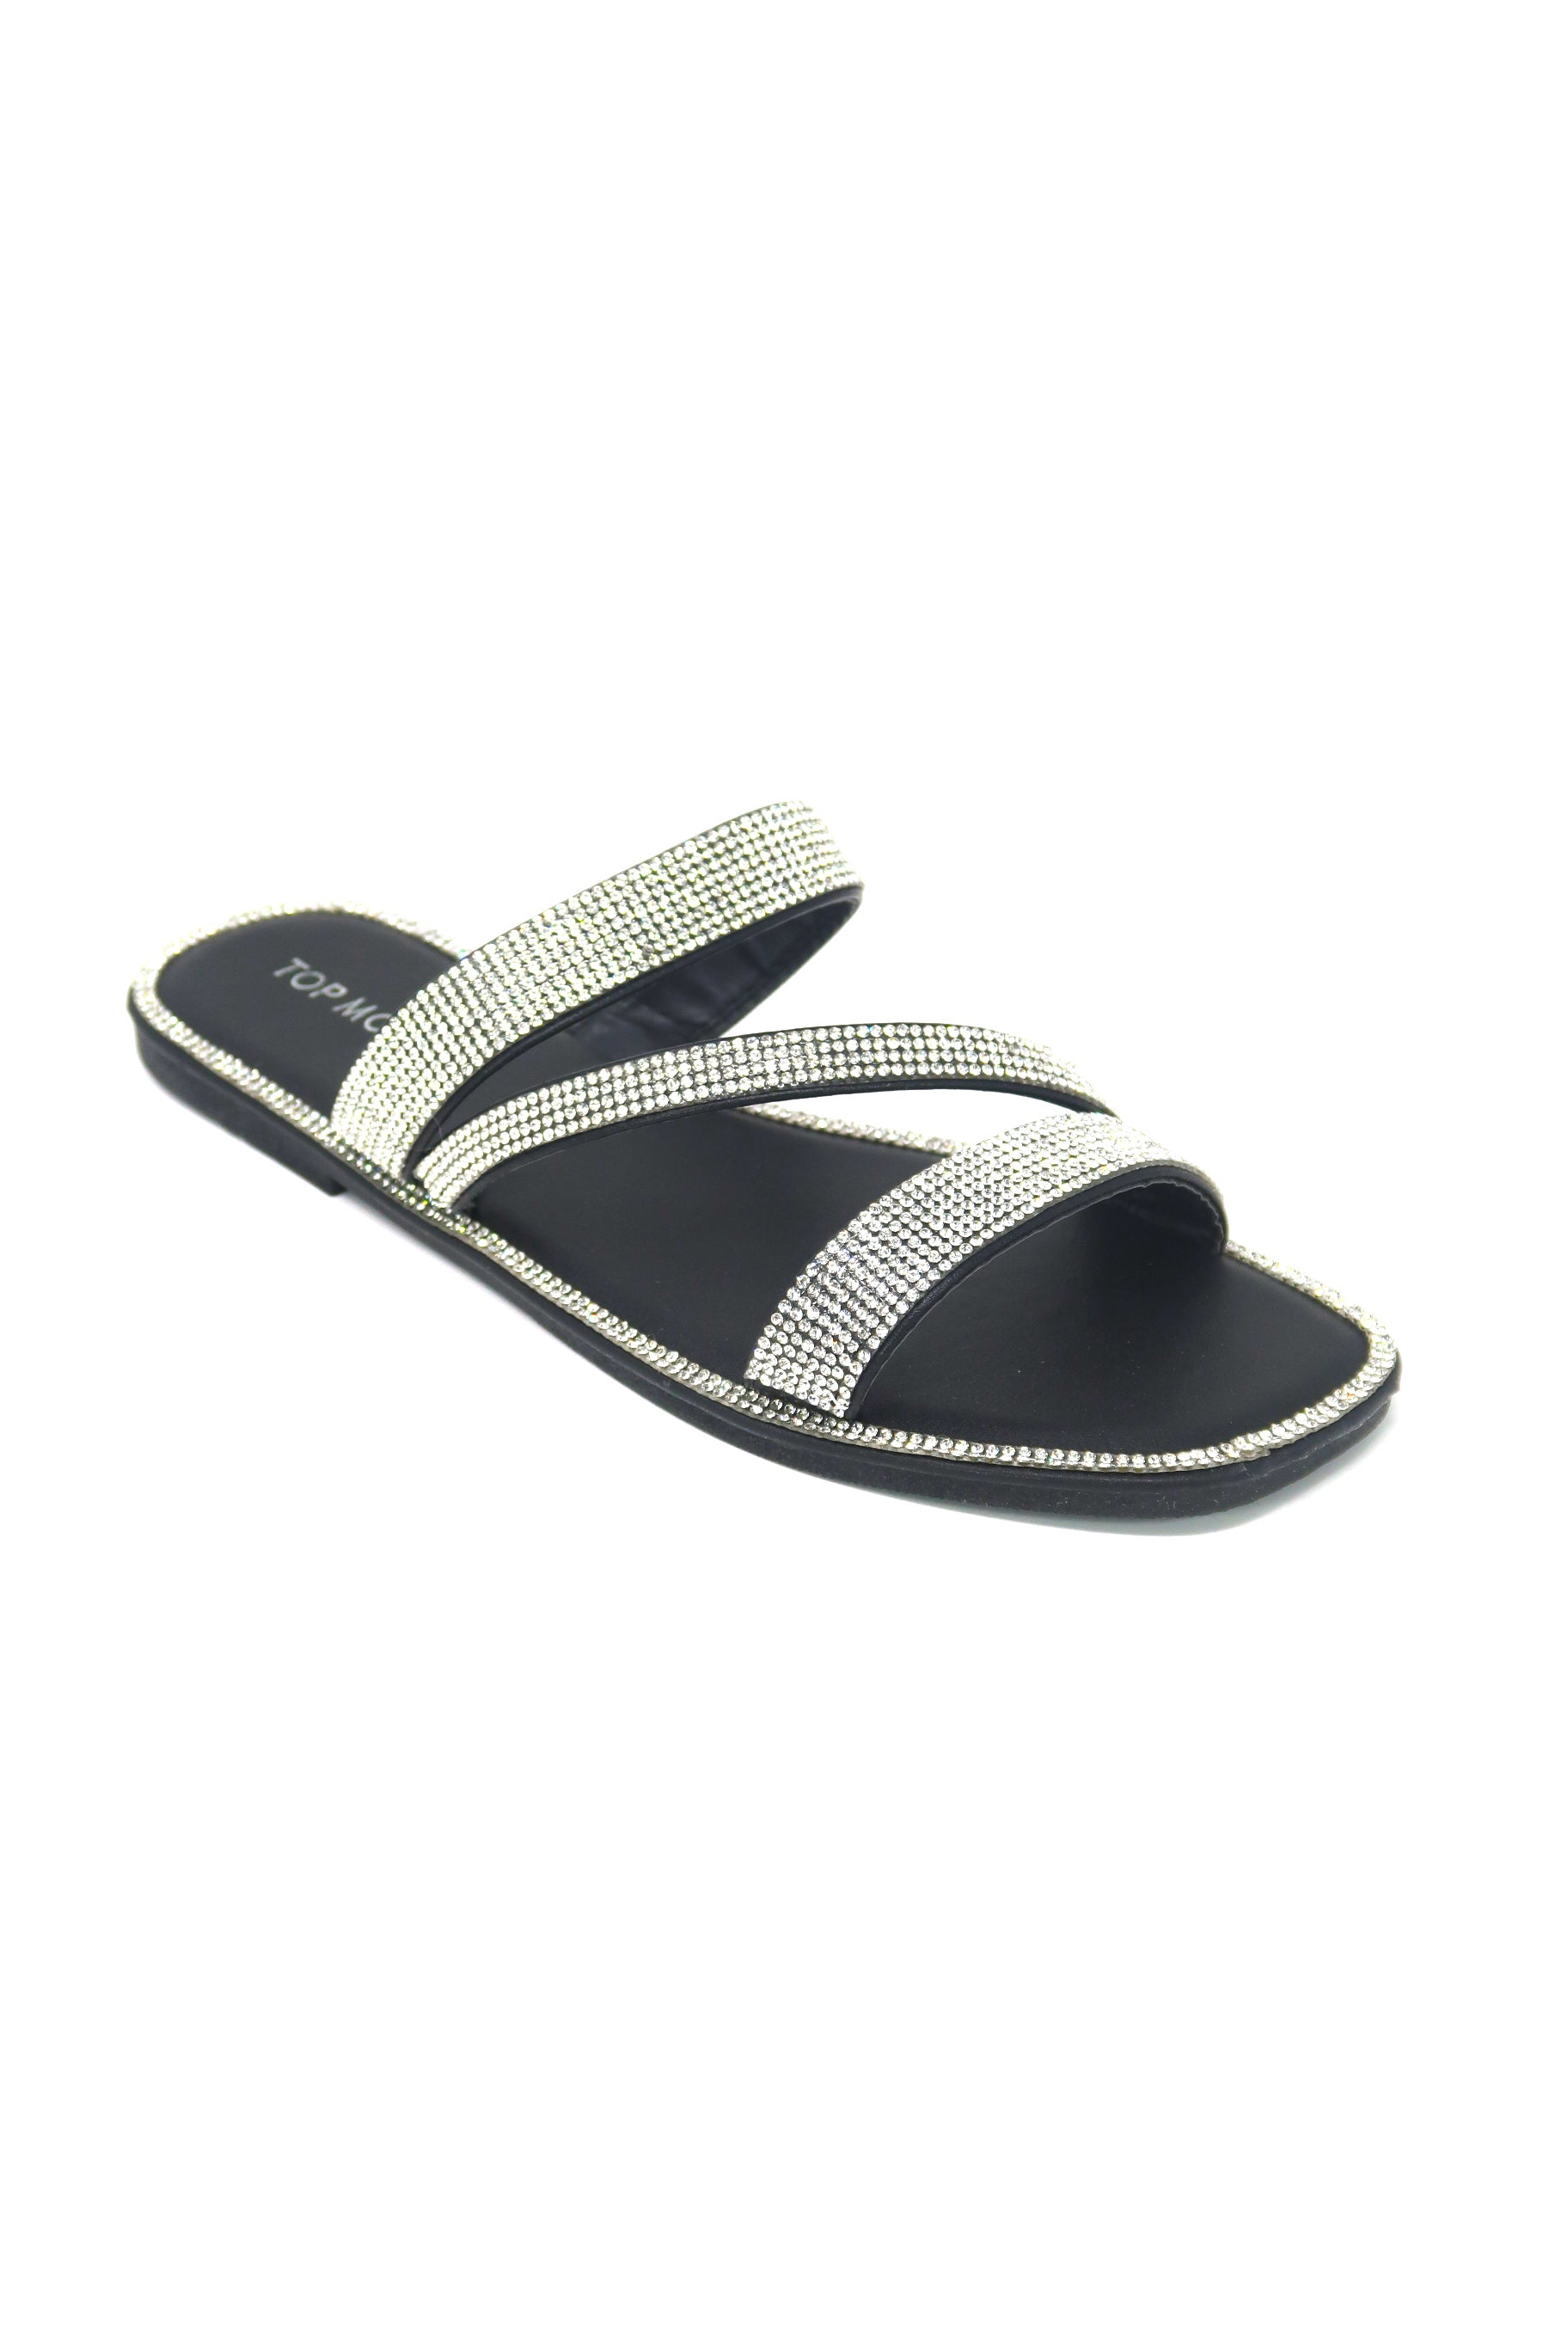 Discover 249+ bling slide sandals best